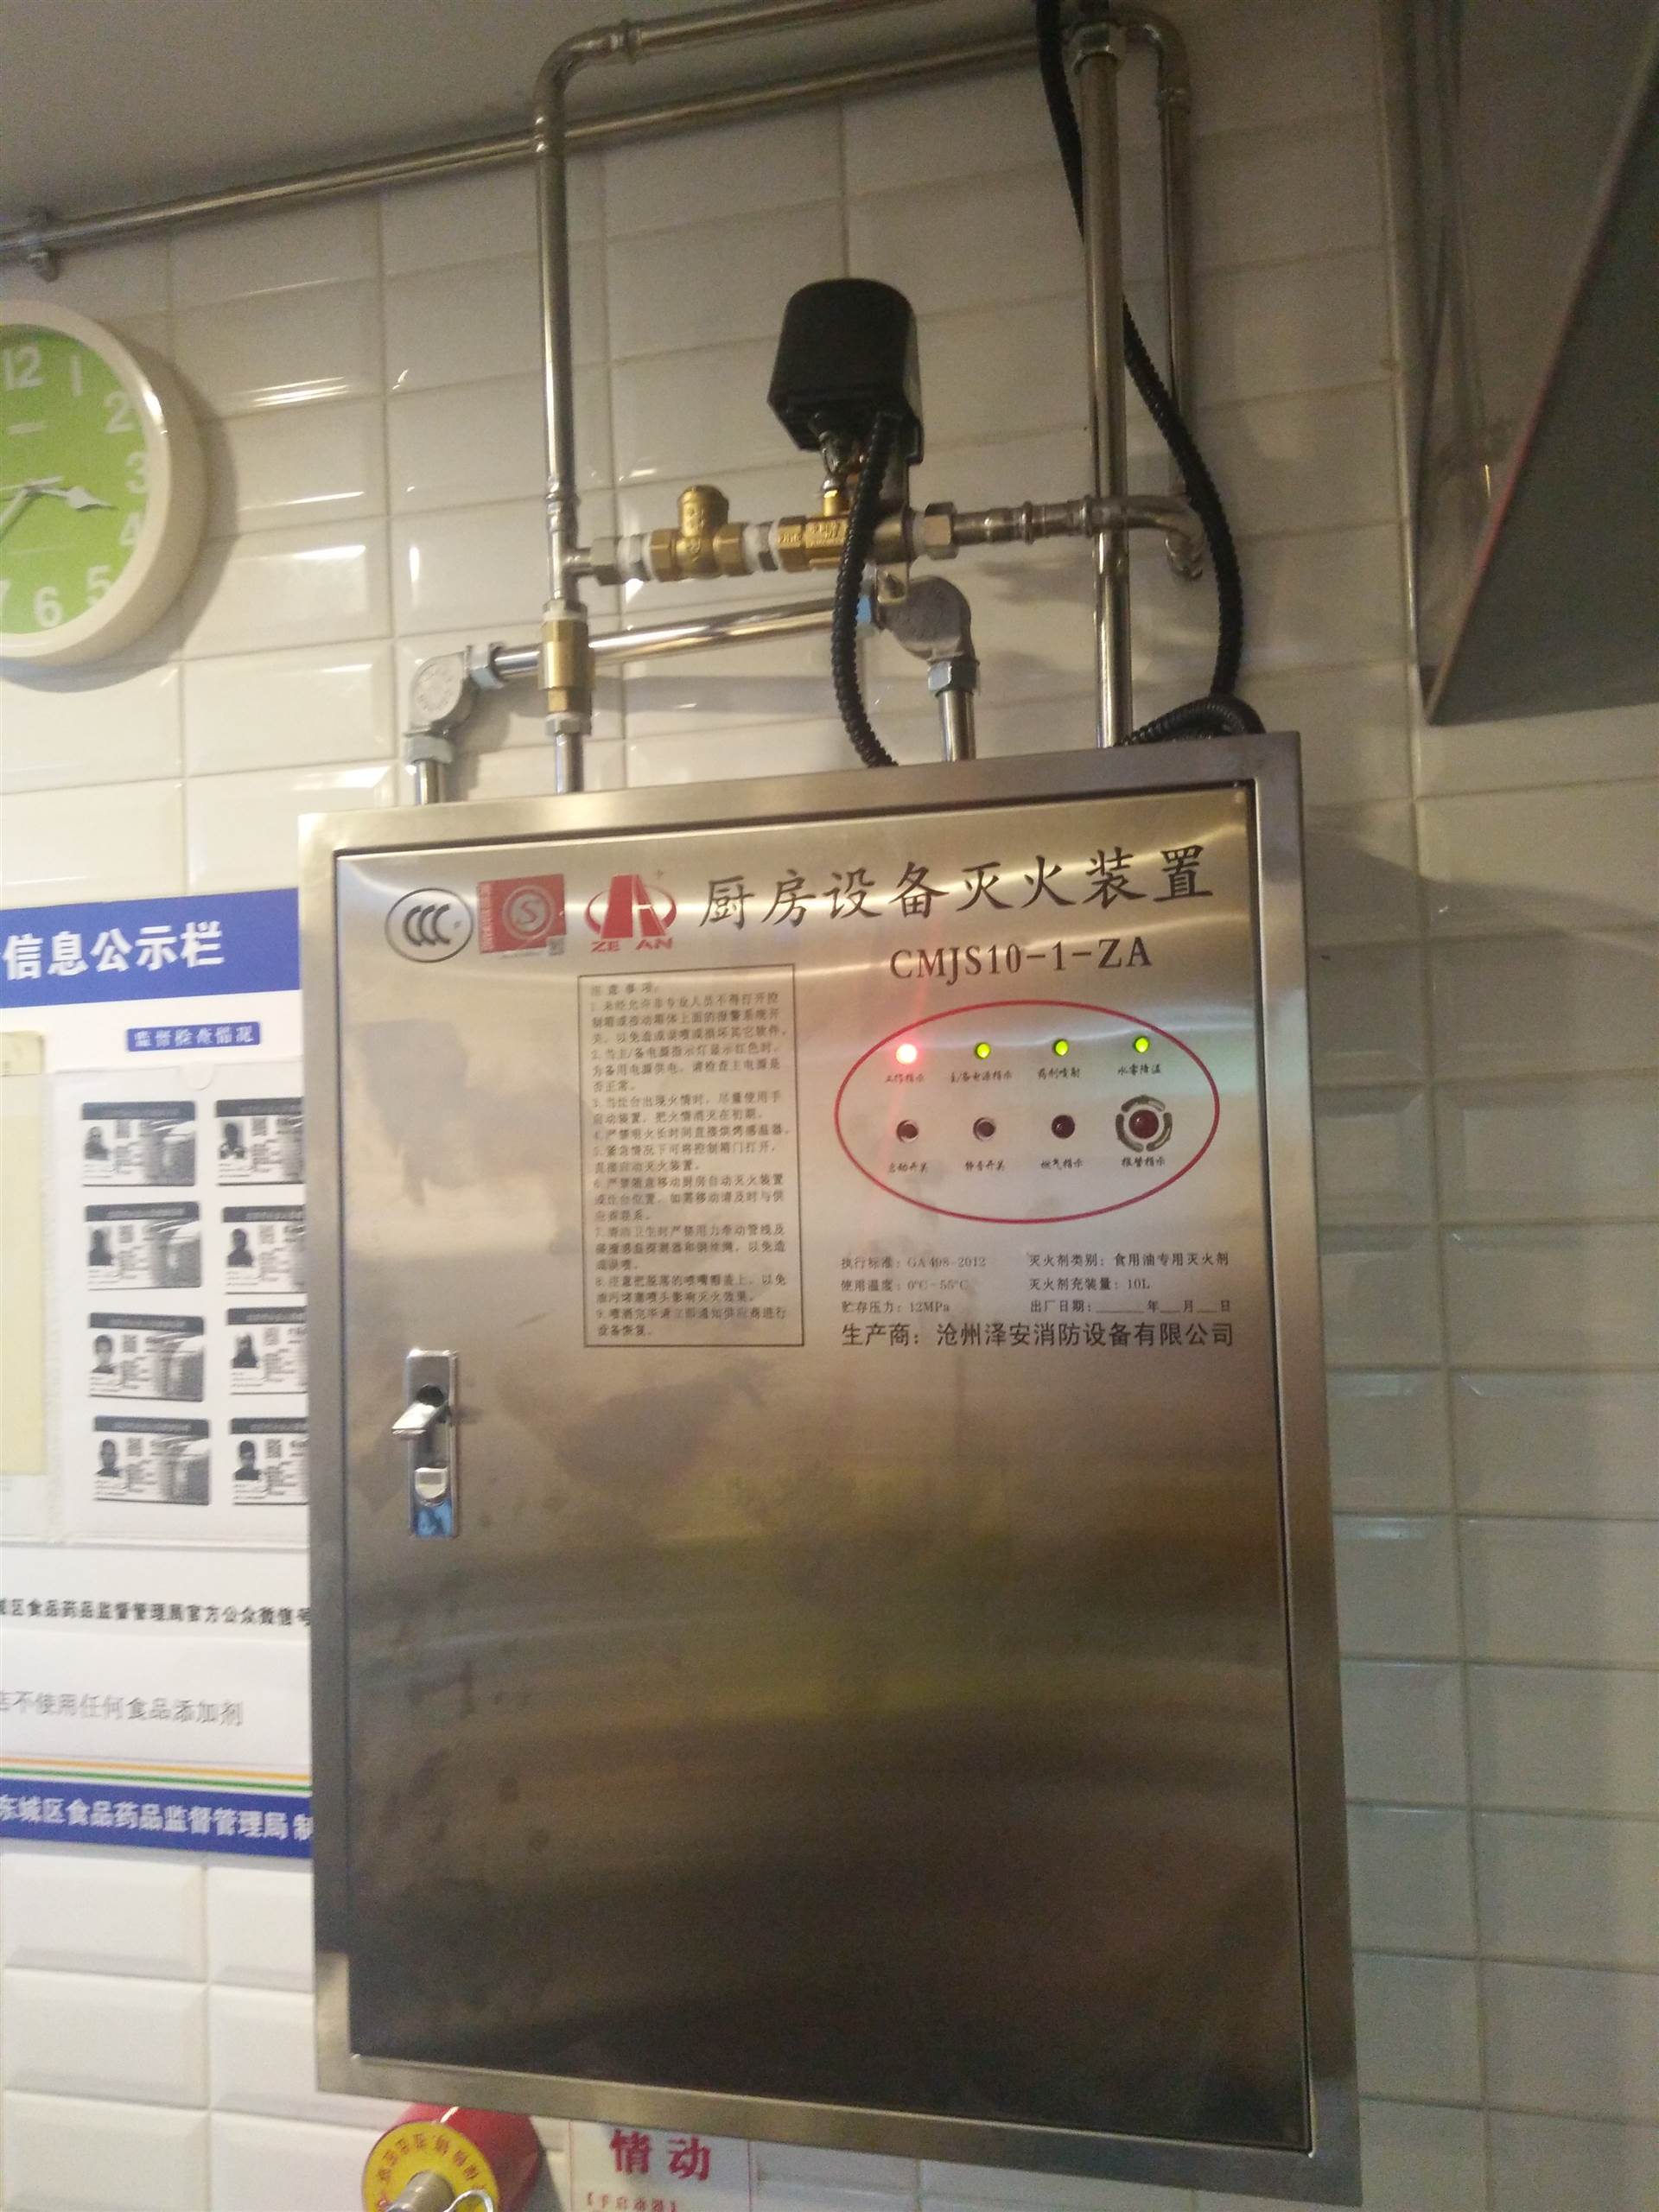 北京市地震局消防自动灭火系统改造